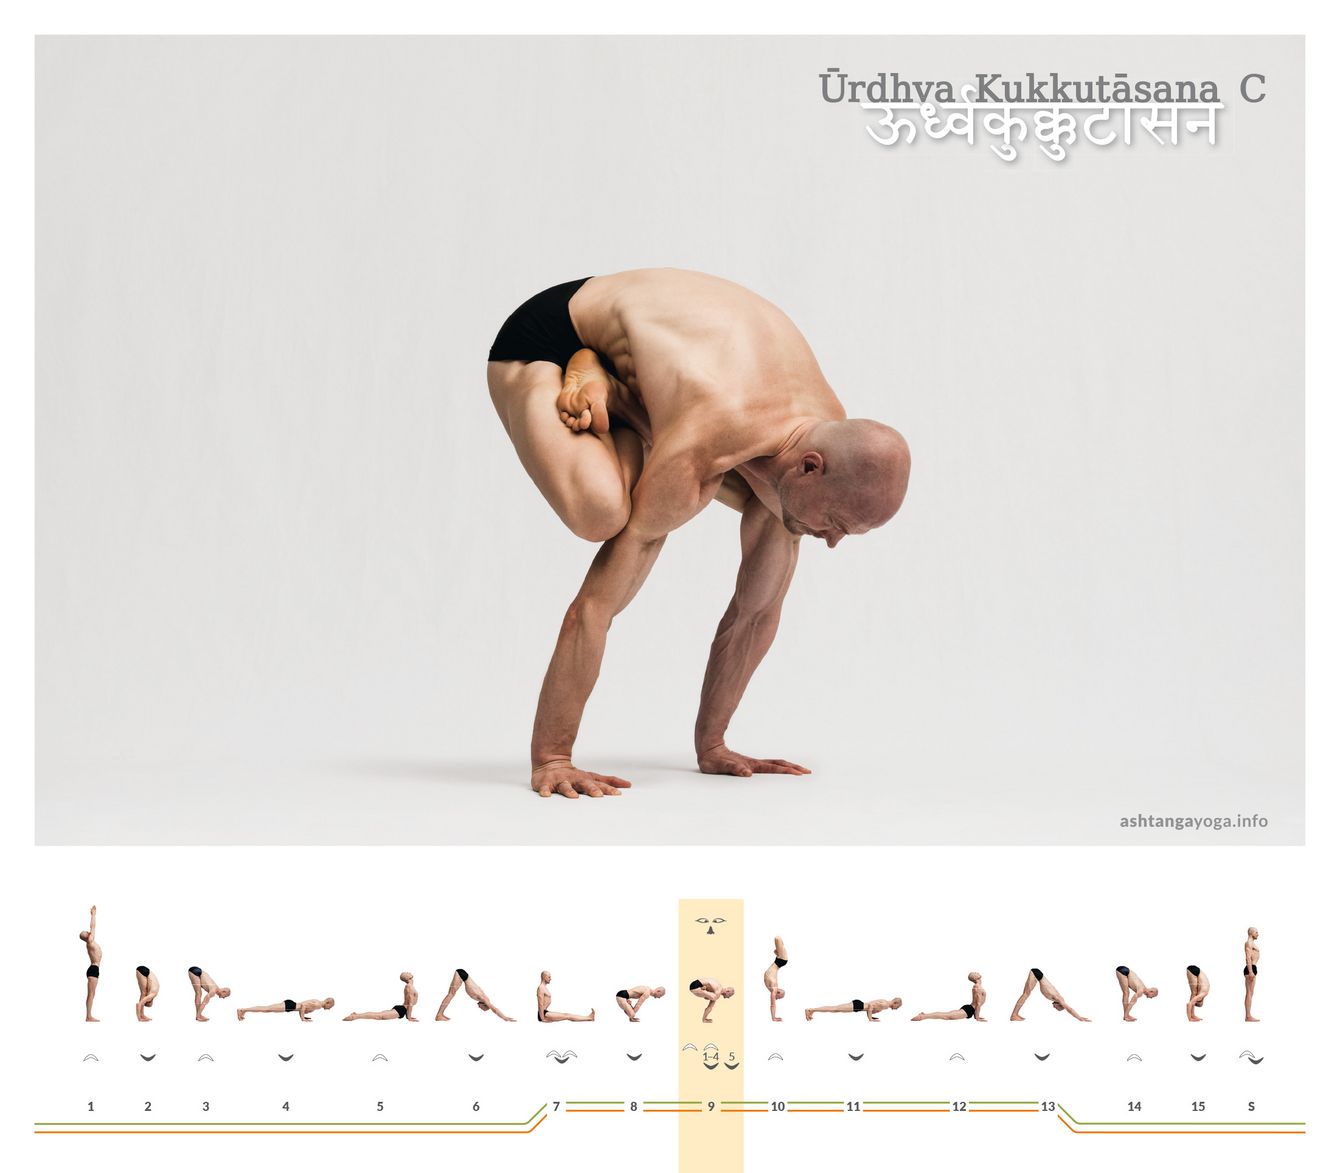 Urdhva Kukkutasana C, eine weitere Variation des „Nach oben gerichteten Hahns“, symbolisiert eine dynamische Energiebewegung, bei der die Balance zwischen der Schwerkraft und der Kraft der Arme eine zentrale Rolle spielt. Hierbei wird die Konzentration gefordert.